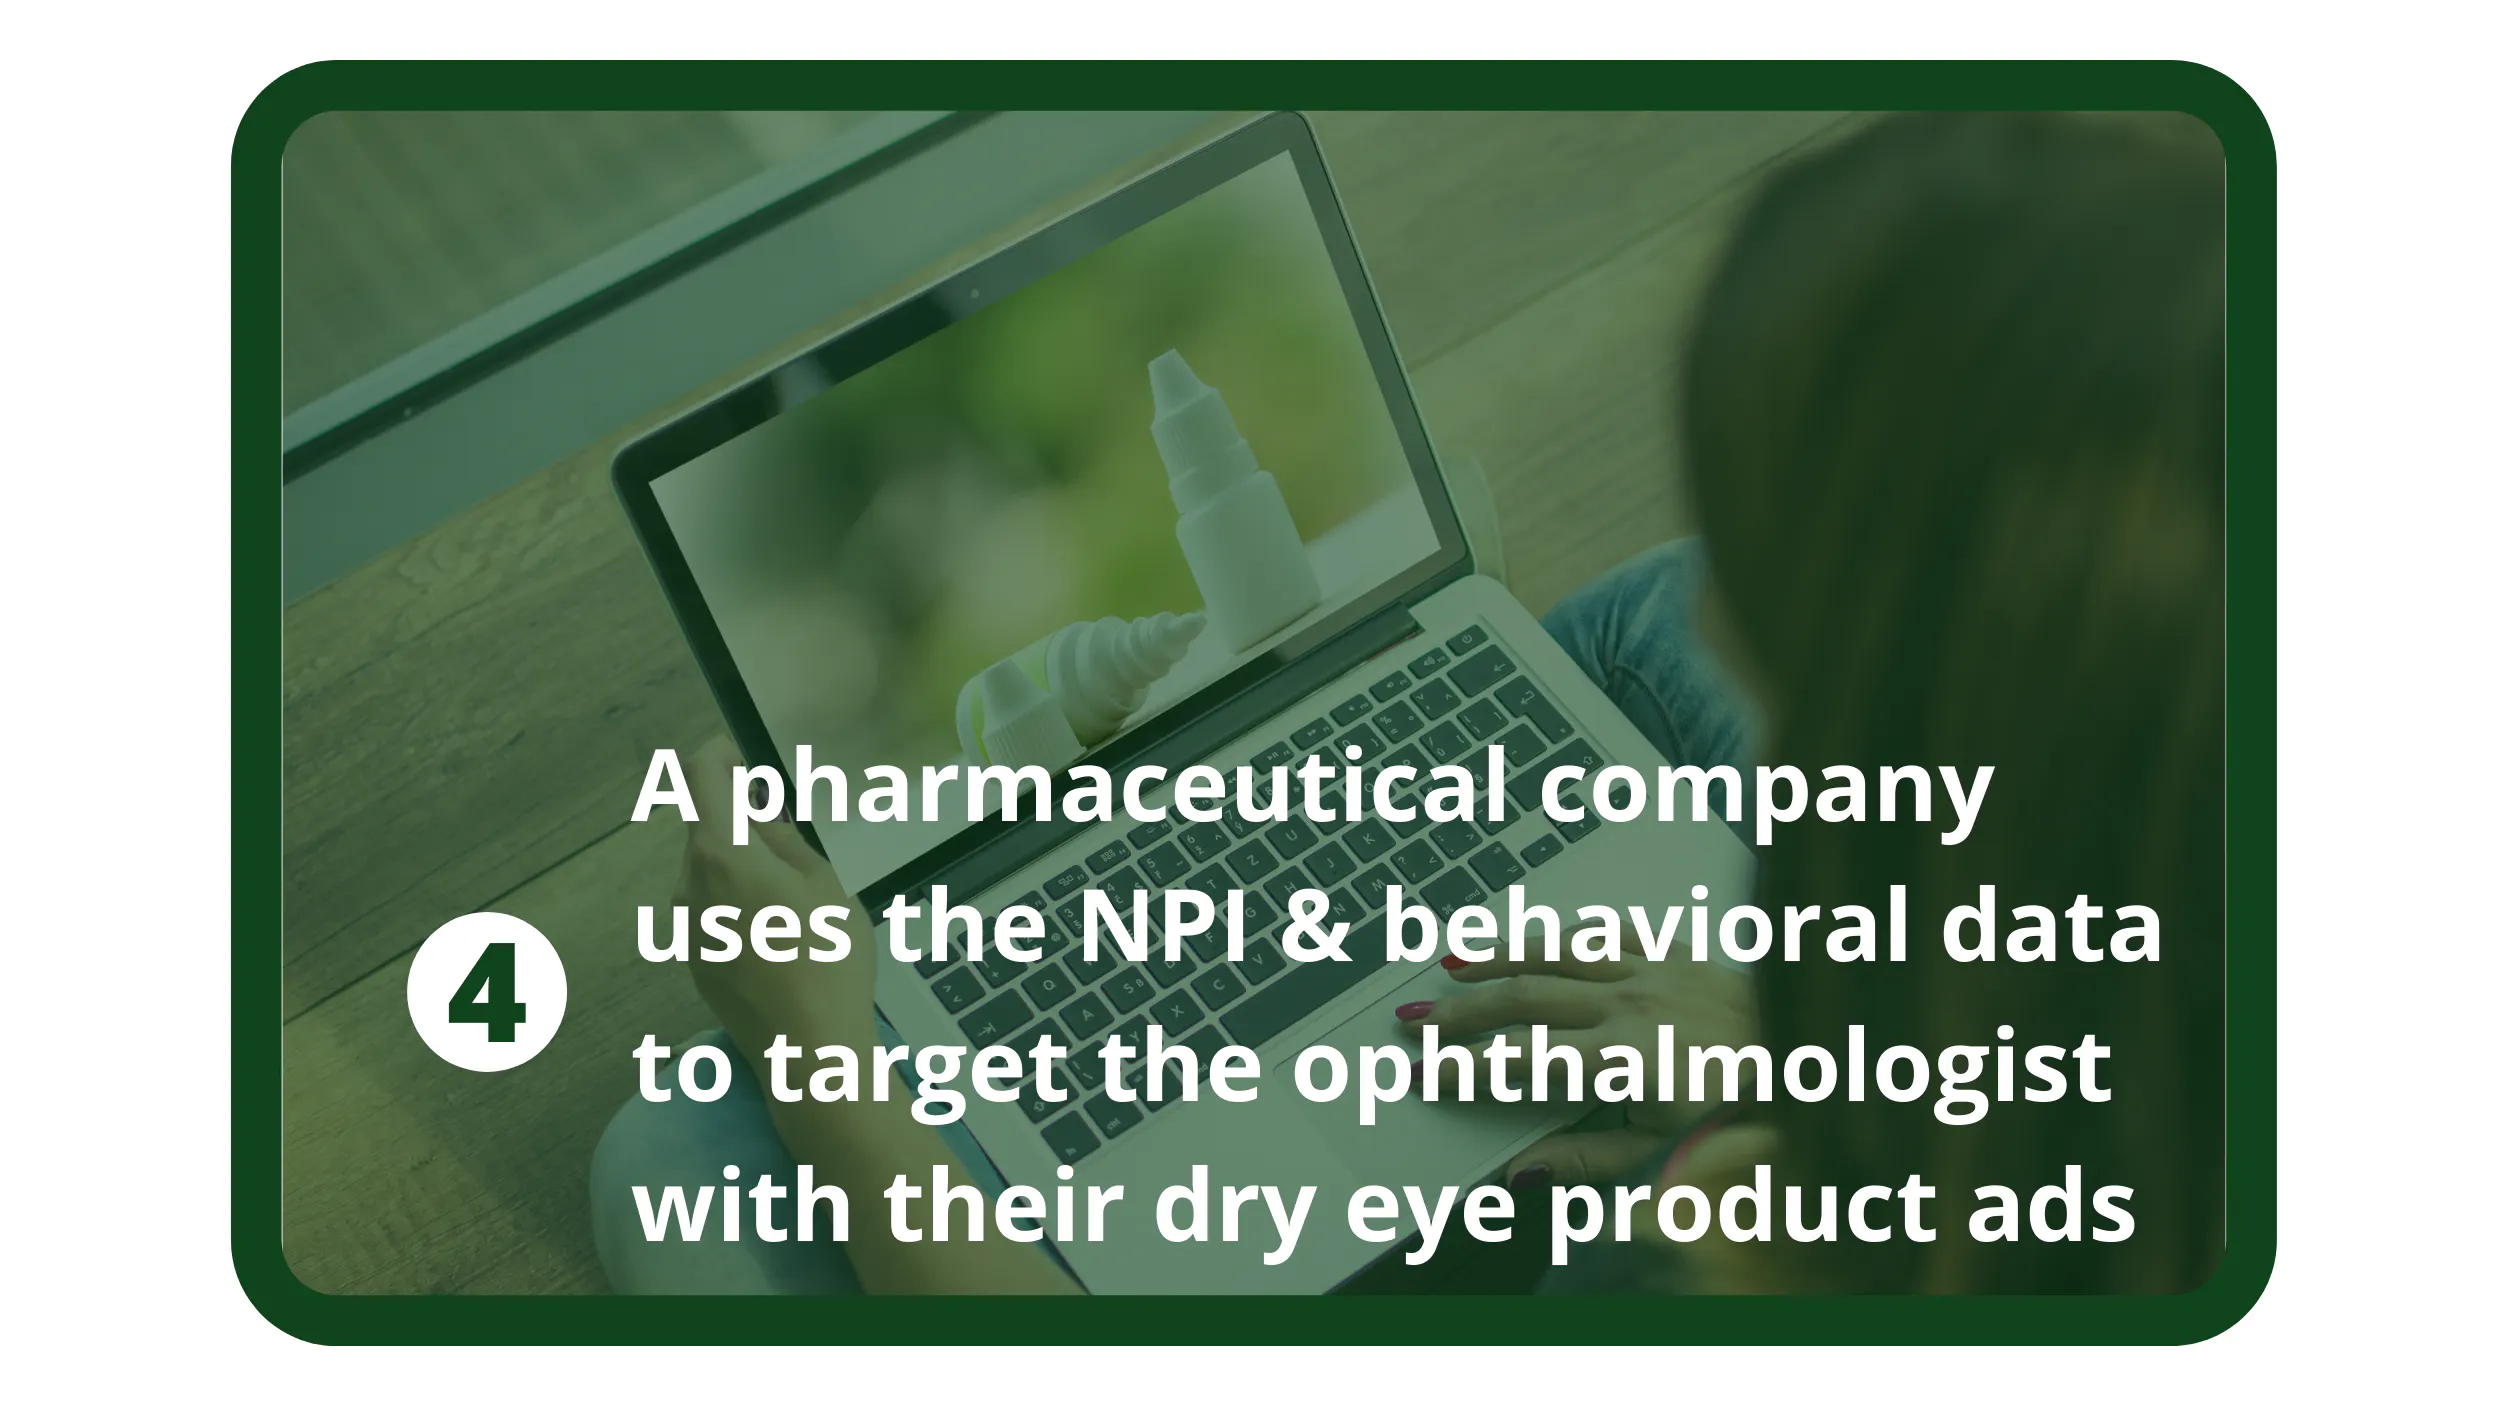 Une entreprise pharmaceutique utilise le NPI et les données comportementales pour cibler les ophtalmologistes avec des publicités pour des produits contre les yeux secs.